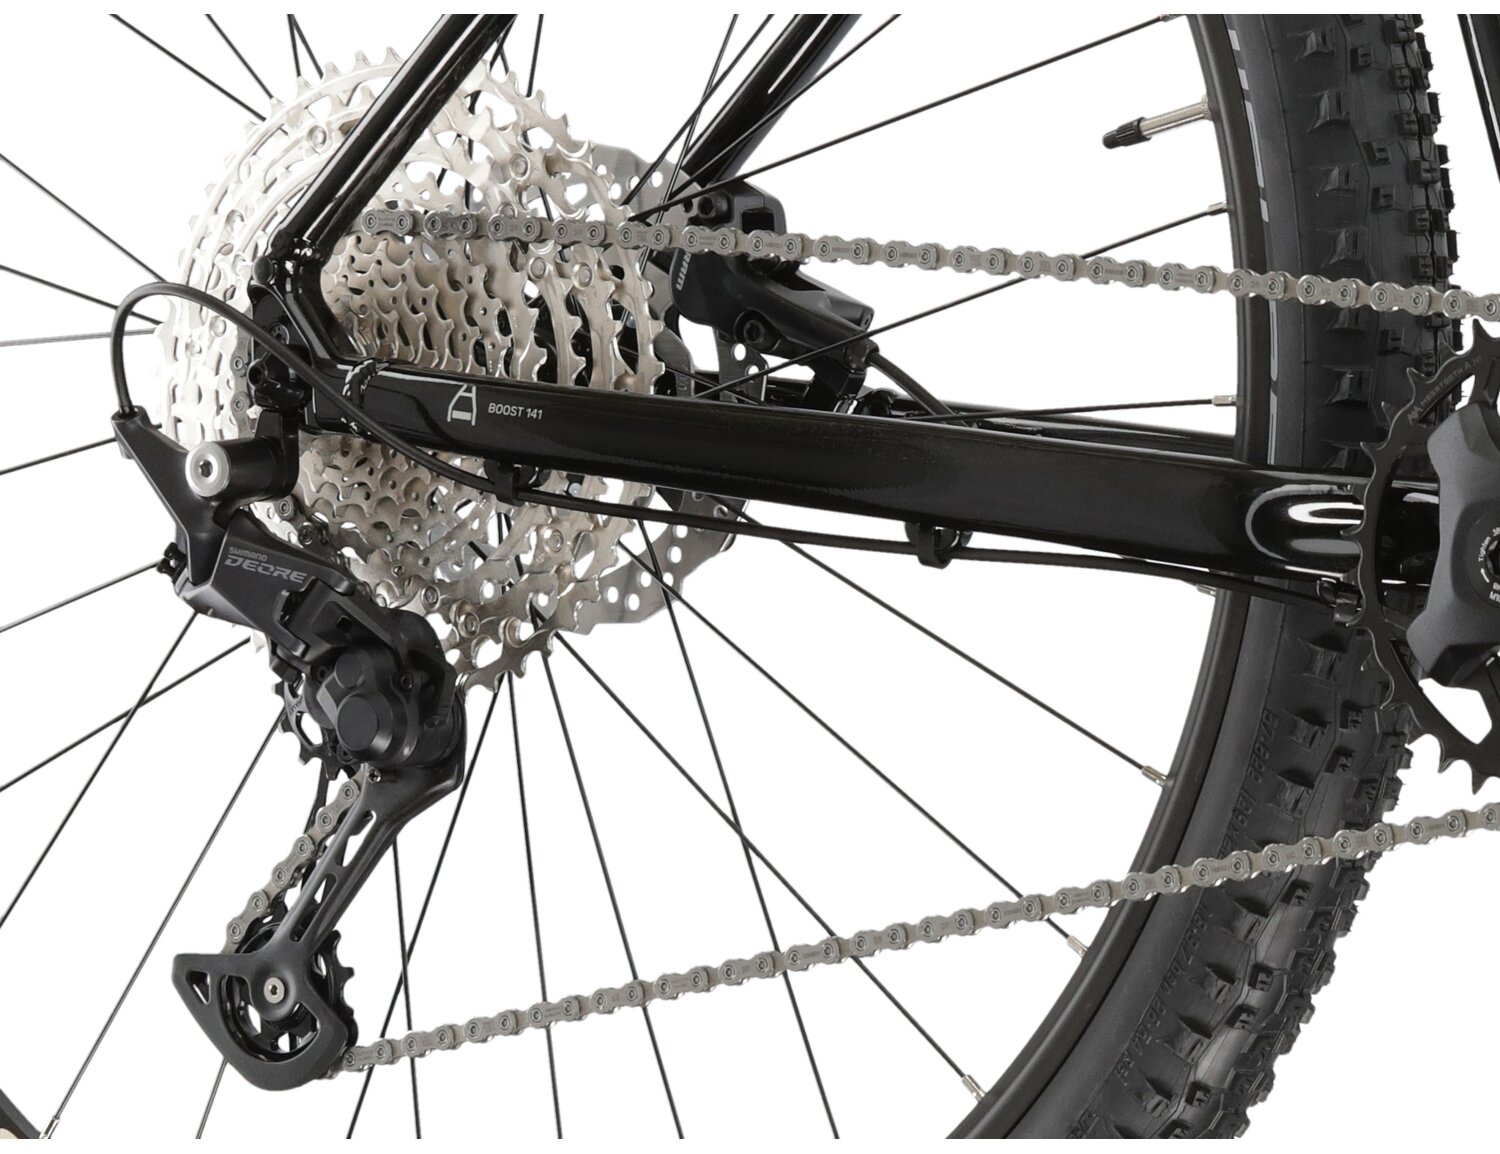  Tylna jedenastobiegowa przerzutka Shimano Deore M5100 oraz hydrauliczne hamulce tarczowe SRAM Level w rowerze górskim MTB XC KROSS Level 5.0 